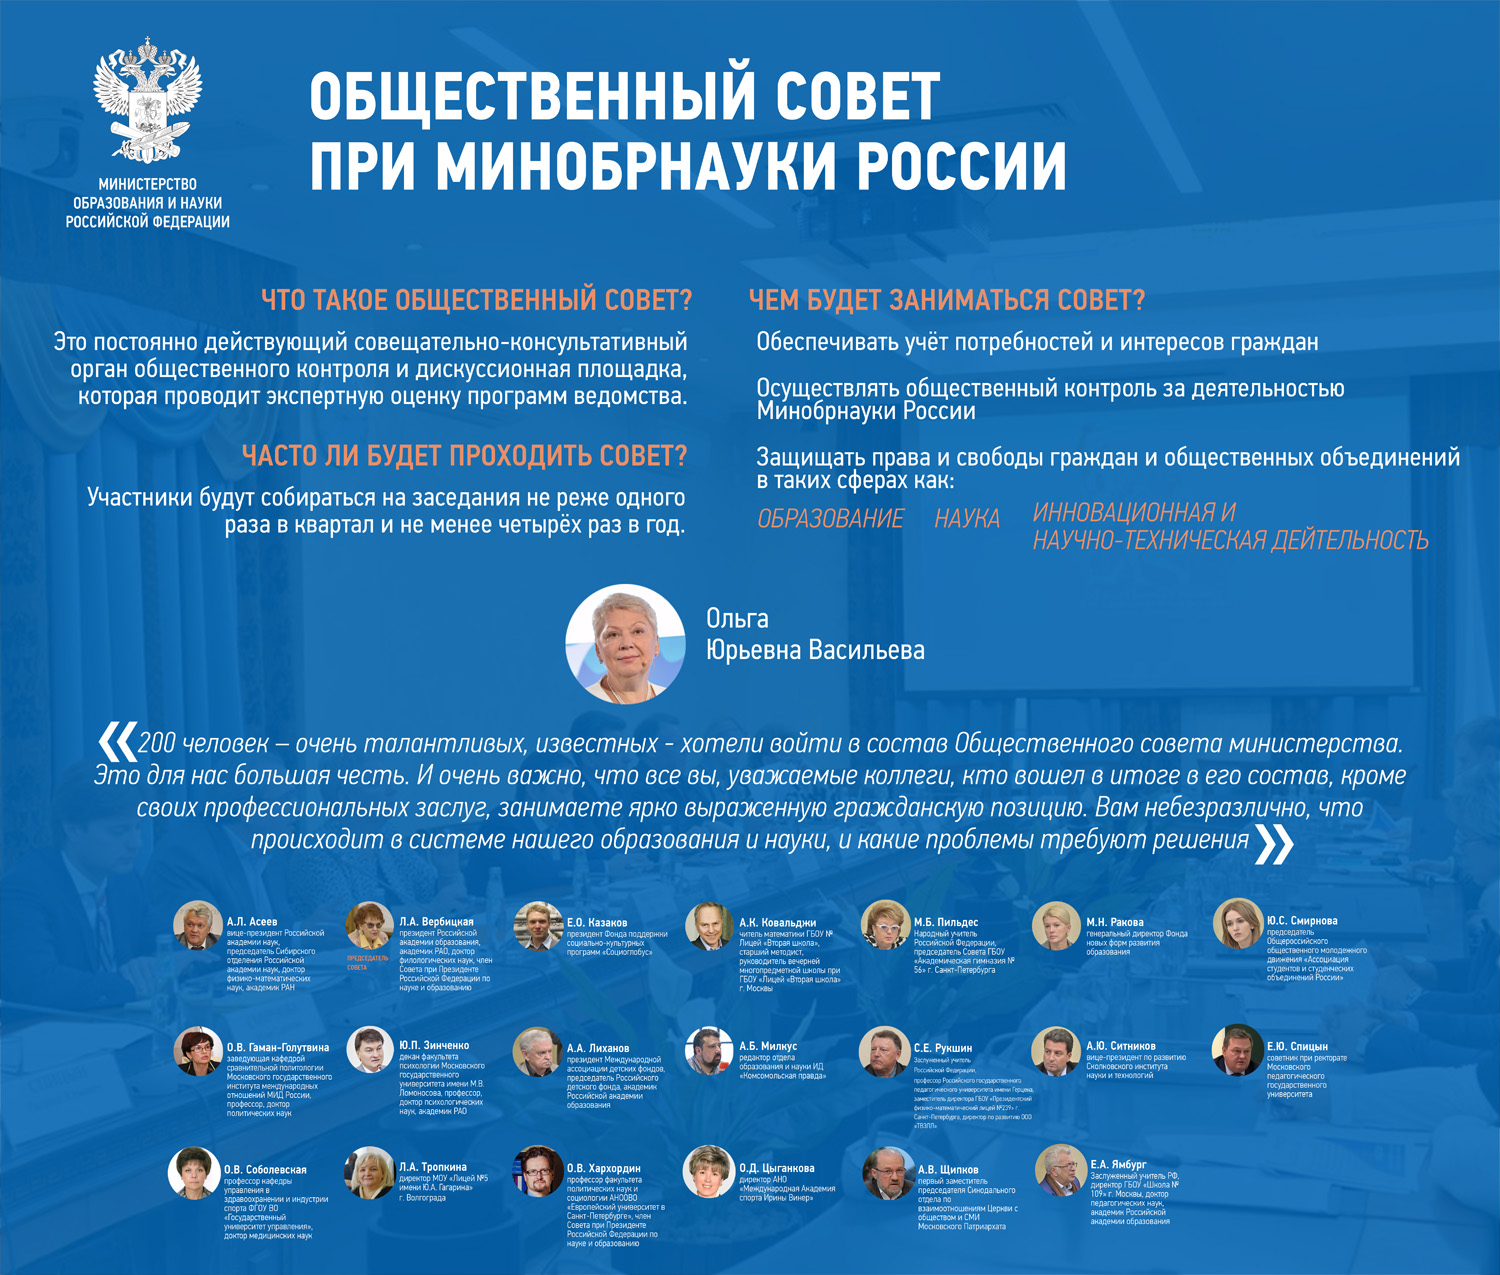 Состав Общественного совета при Минобрнауки России в 2017